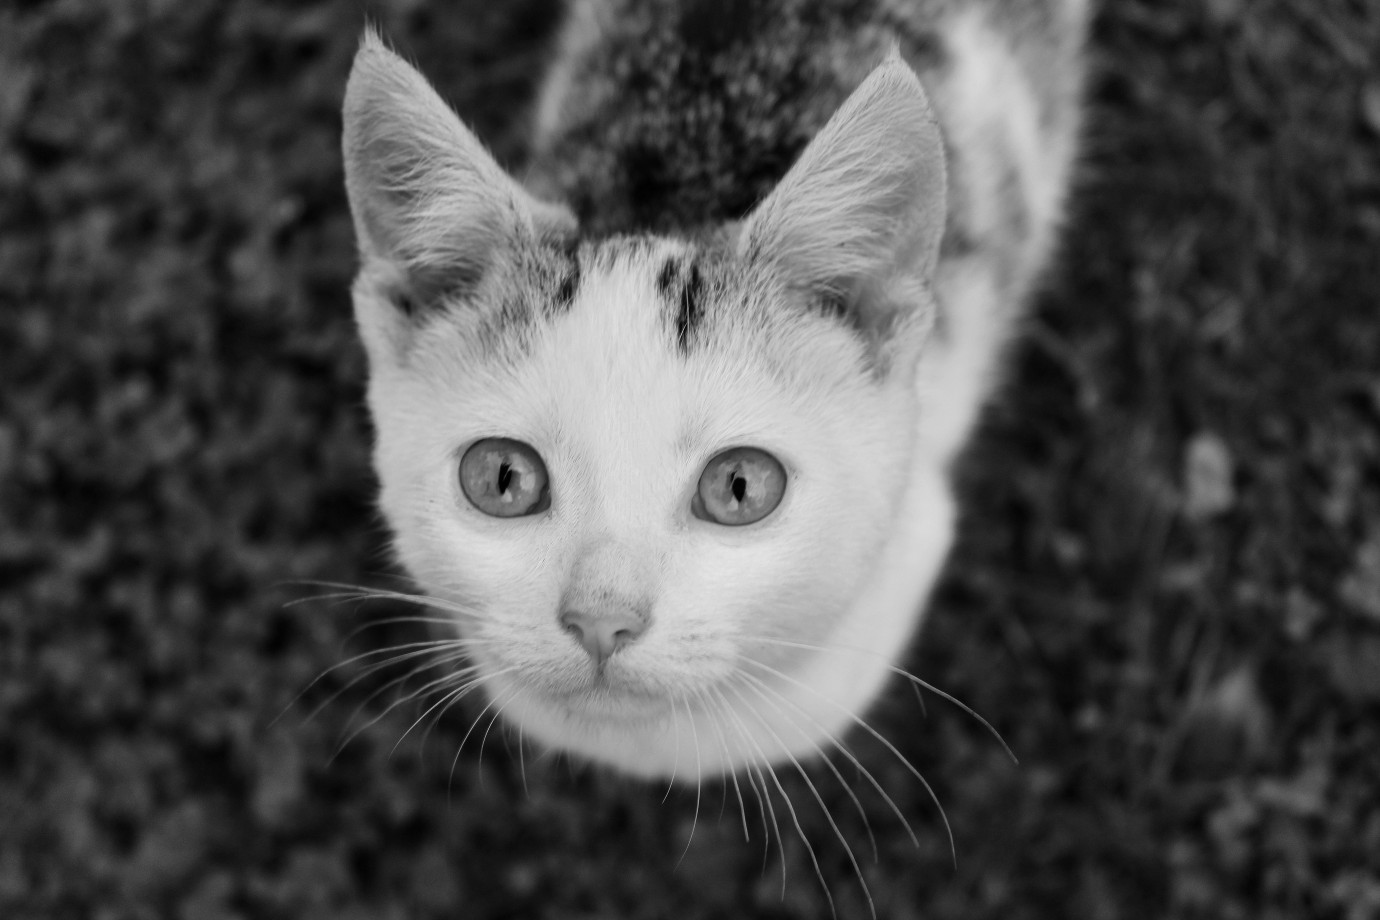 fotograf parczew milaphotography portfolio zdjecia zwierzat sesja zdjeciowa konie psy koty